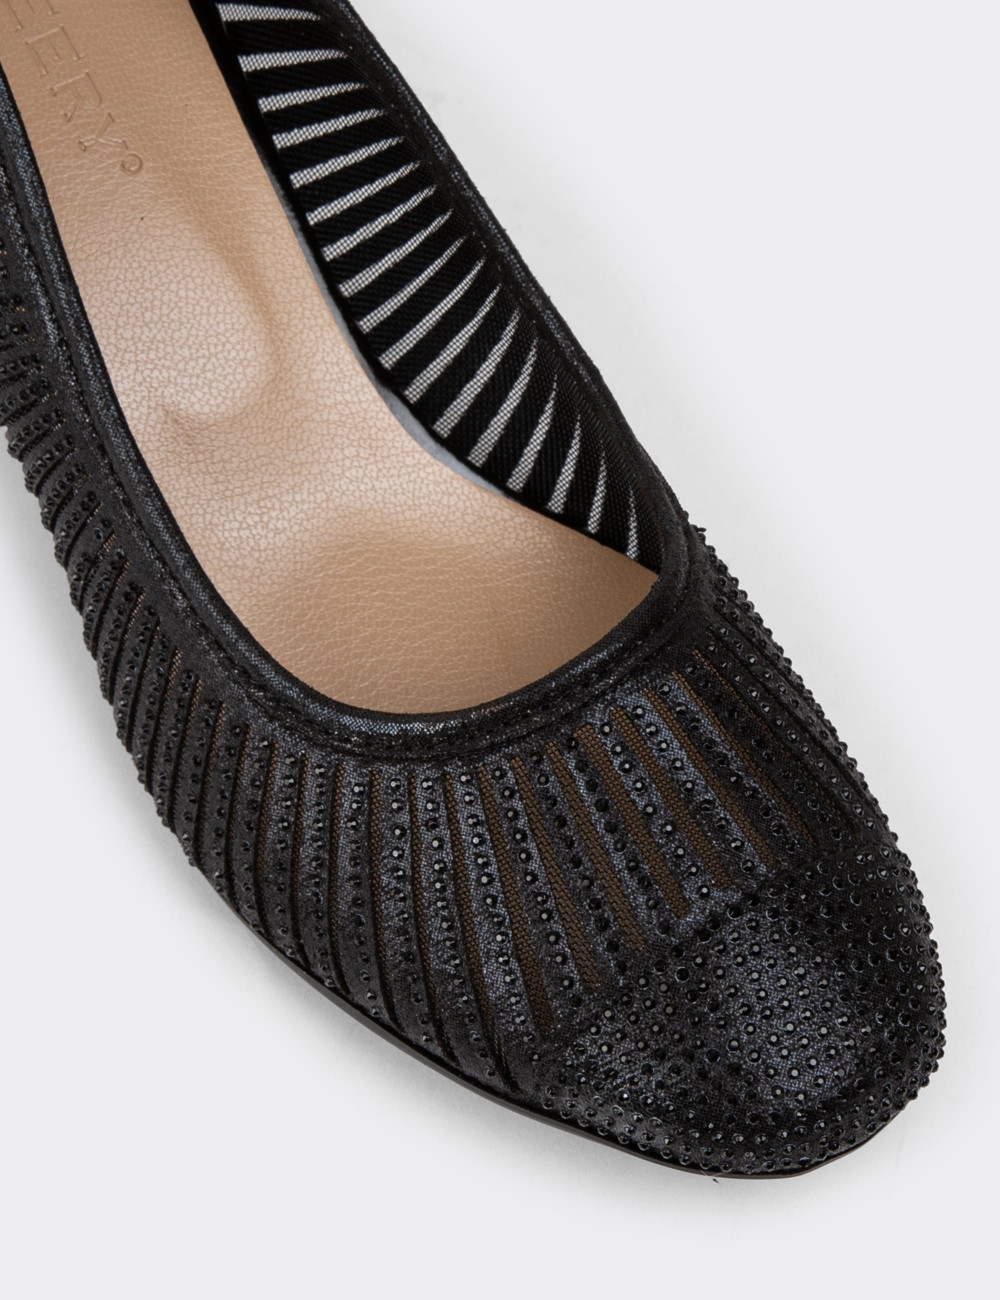 Siyah Topuklu Günlük Kadın Ayakkabı - K8642ZSYHC01